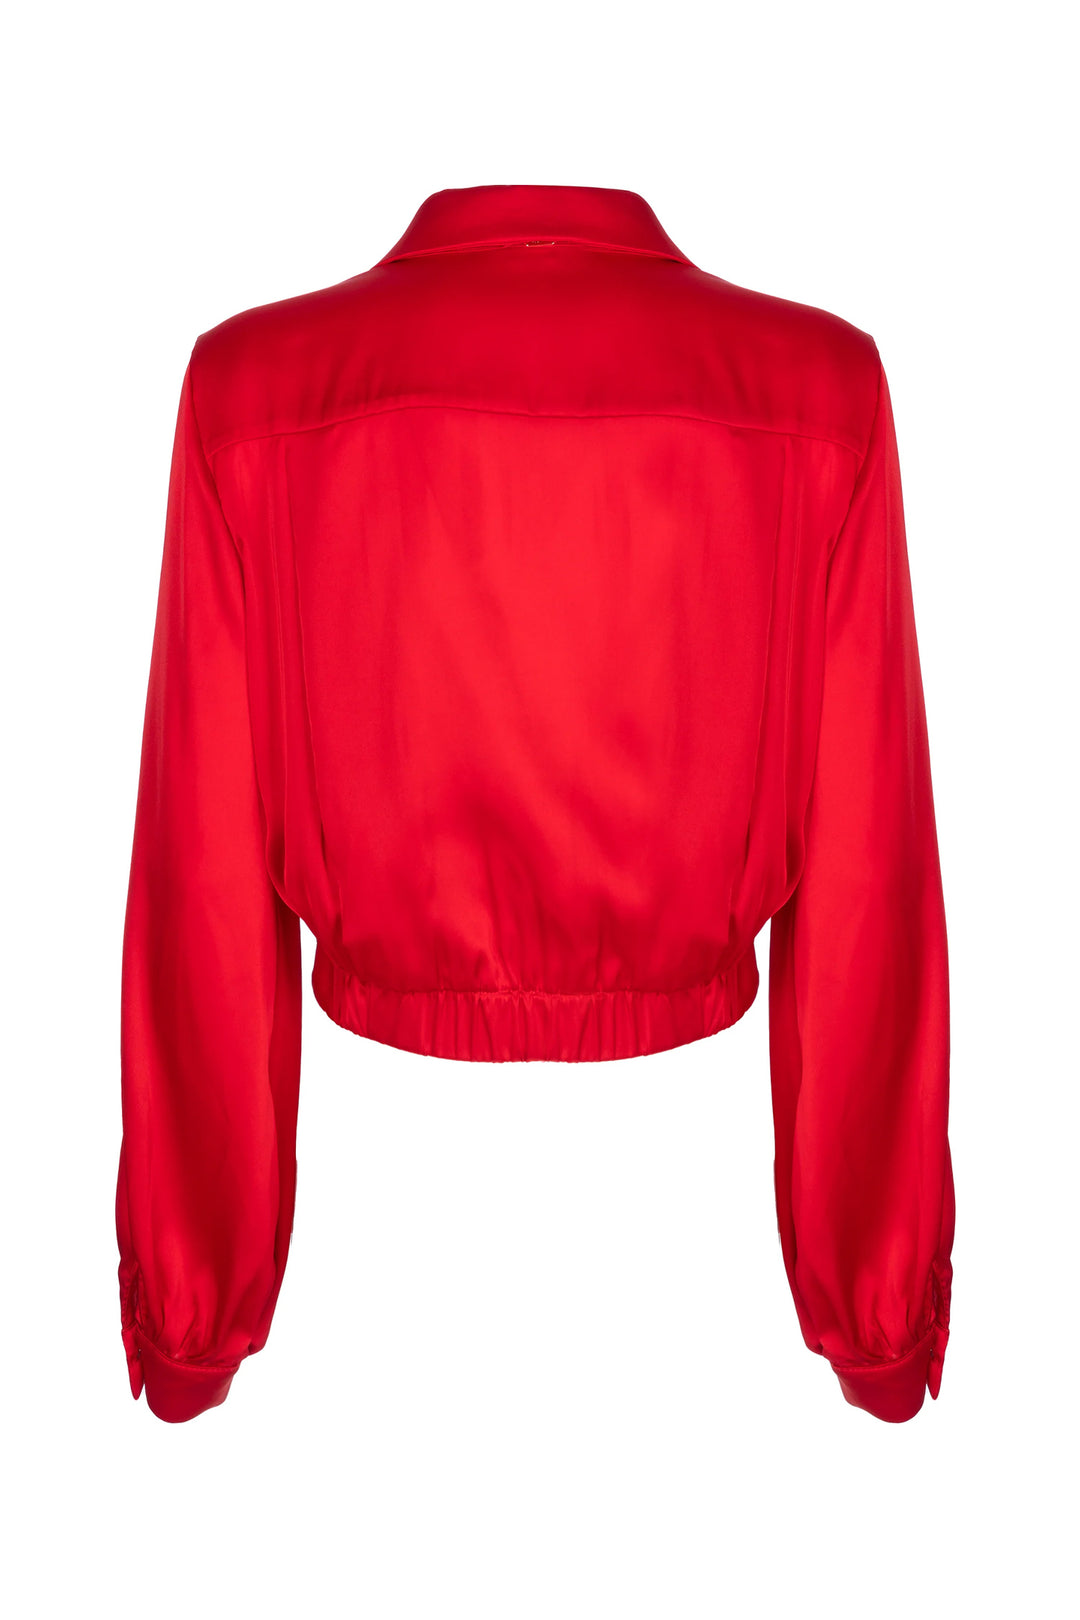 FRACOMINA Camicia cropped rossa in raso con incrocio sul davanti - Mancinelli 1954